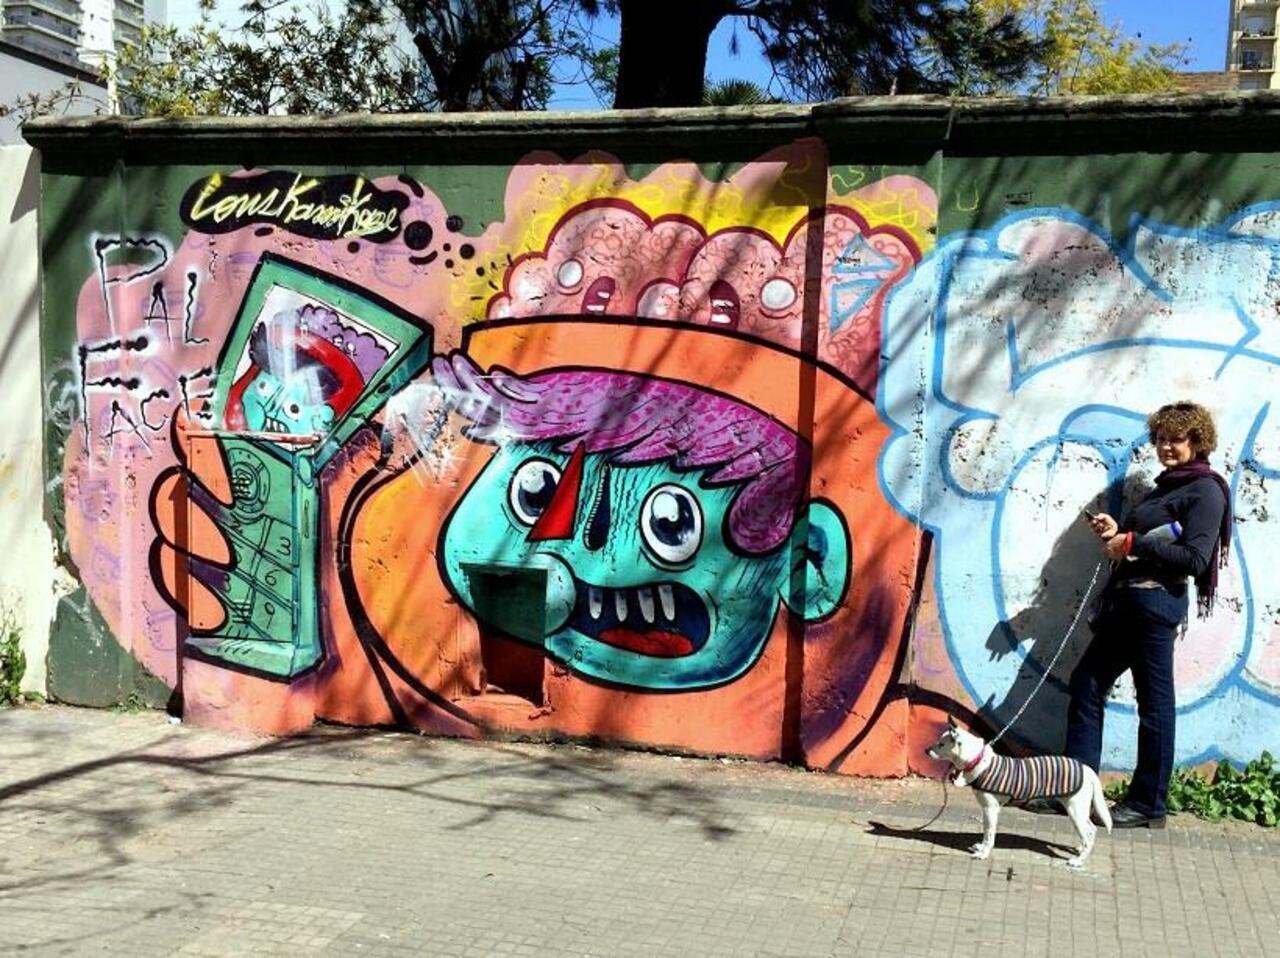 RT @DickieRandrup: #Graffiti de hoy: <<El hombrecito verde, la dama y el perrito >> calles 47y9 #LaPlata #Argentina #StreetArt #UrbanArt http://t.co/XlvxPl3Dht